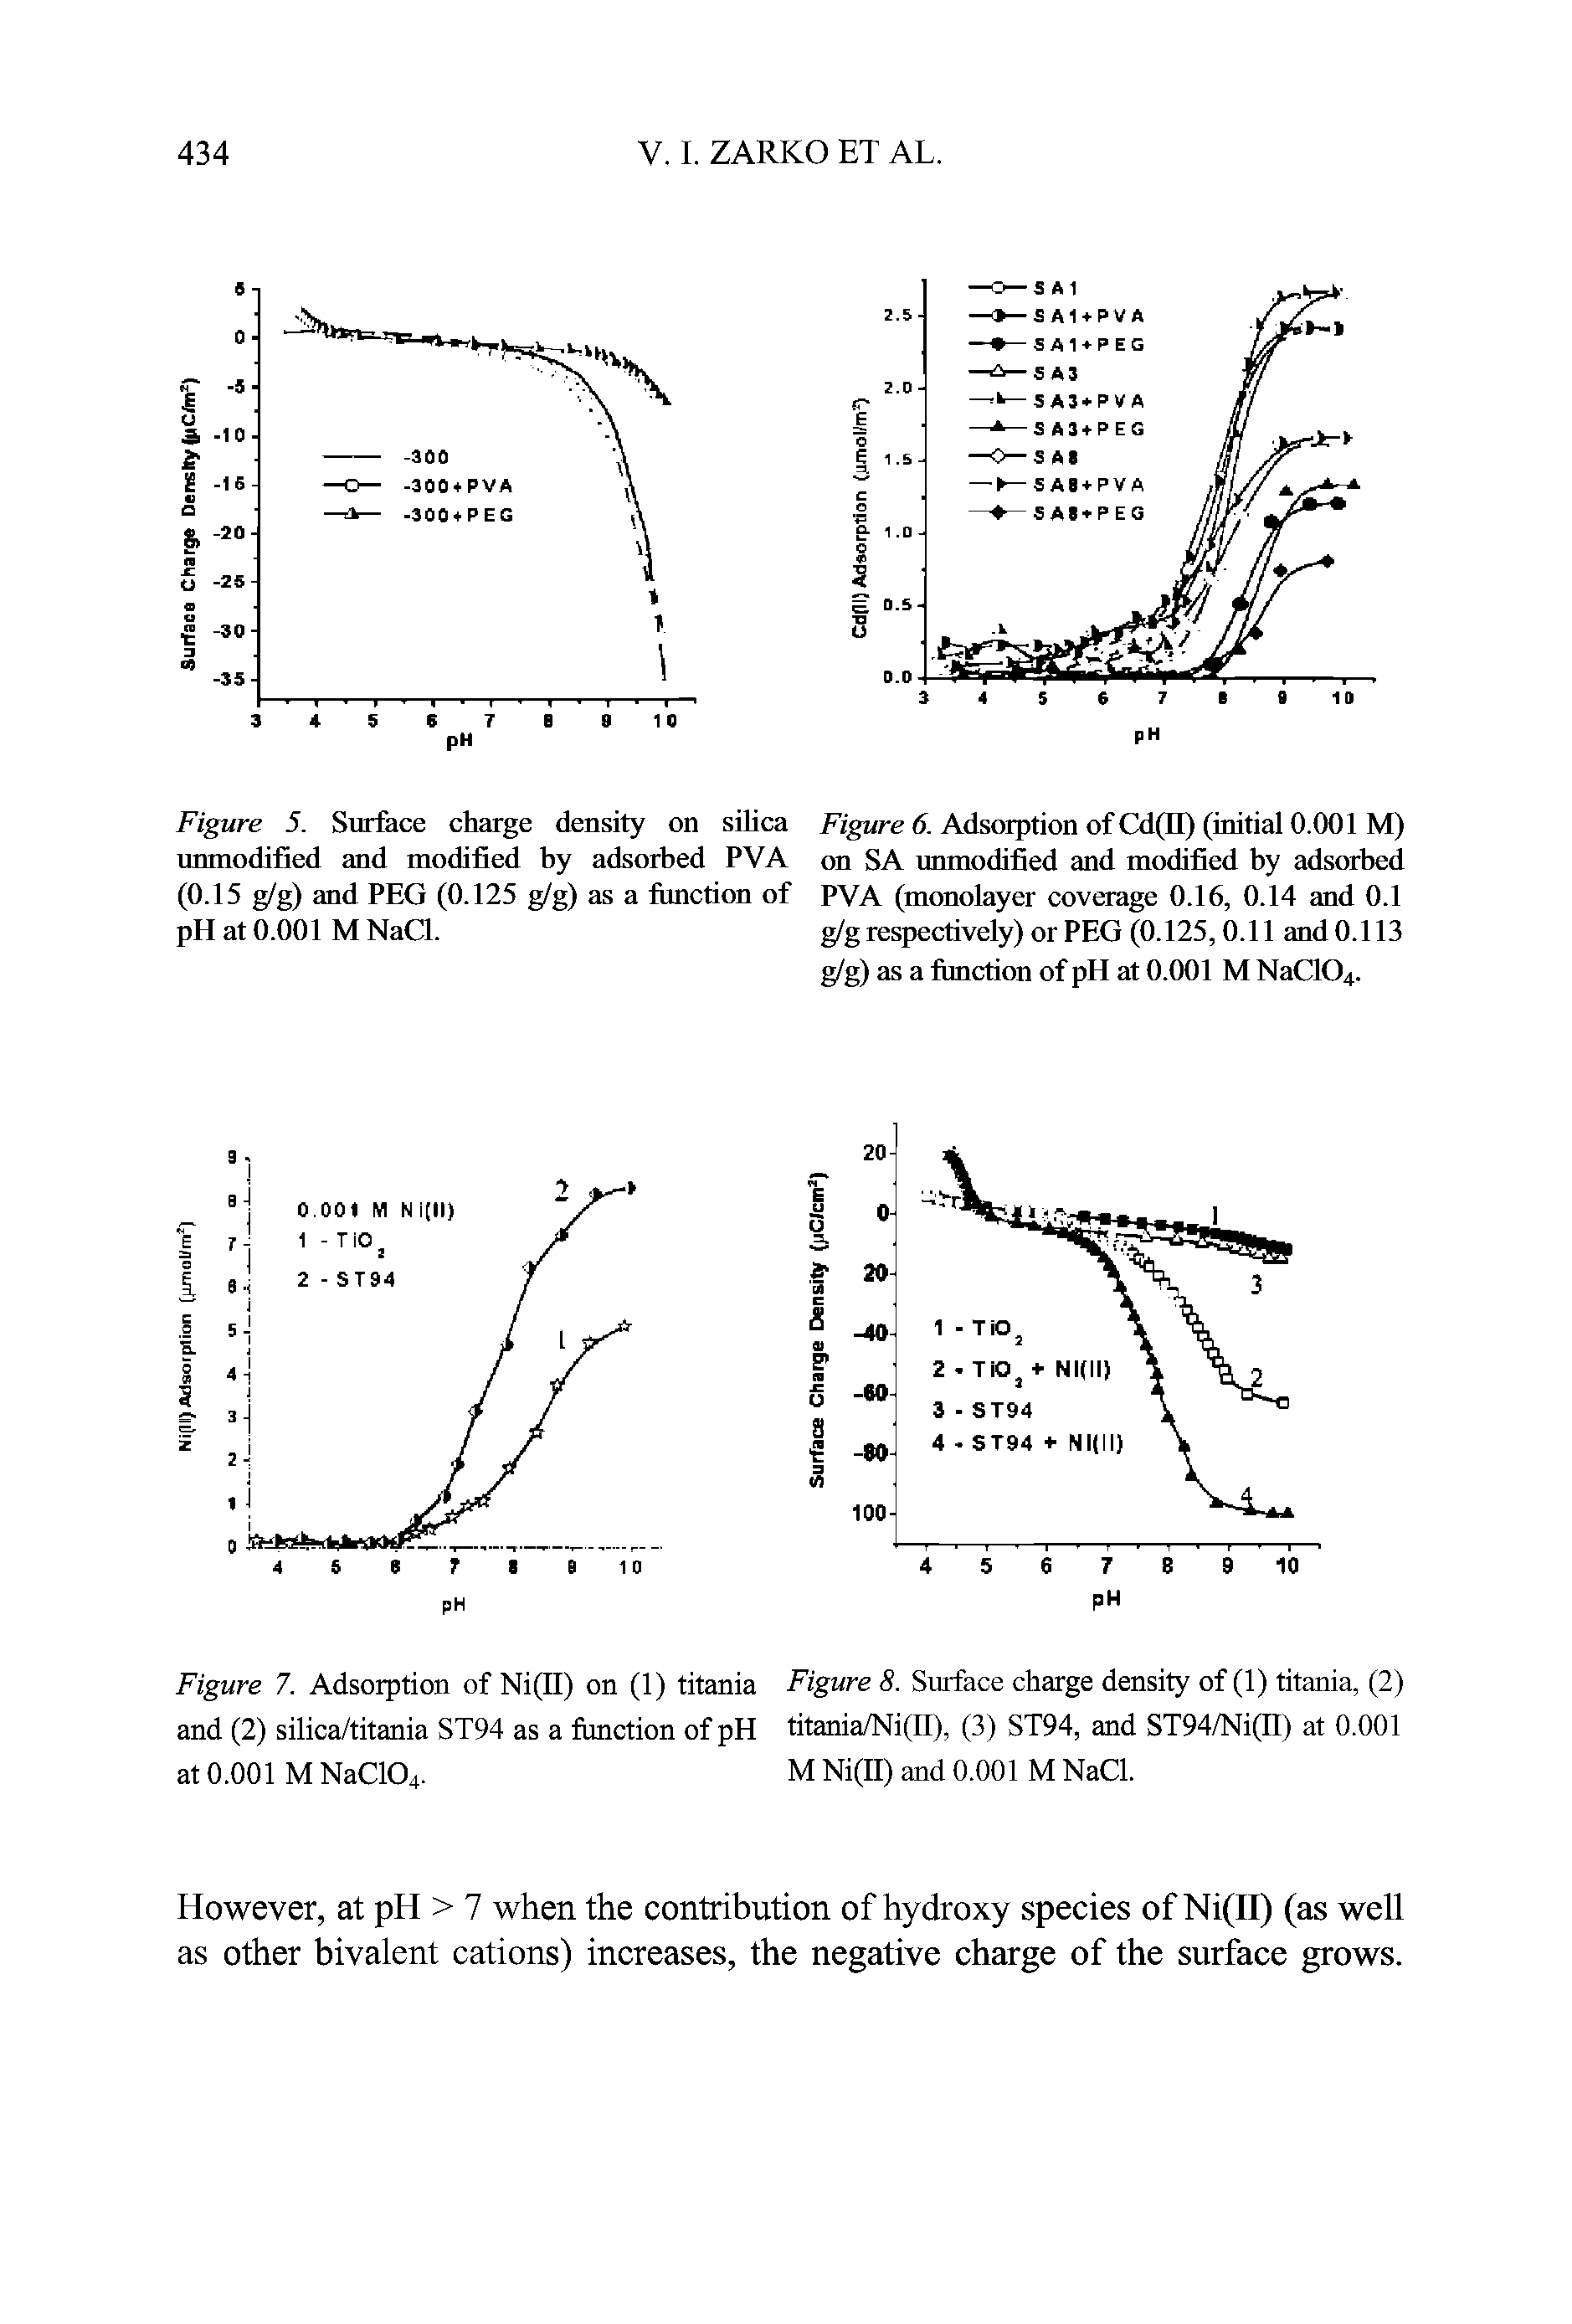 Figure 7. Adsorption of Ni(II) on (1) titania Figure 8. Surface charge density of (1) titania, (2) and (2) silica/titania ST94 as a function of pH titania/Ni(II), (3) ST94, and ST94/Ni(II) at 0.001 at 0.001 M NaC104. M Ni(II) and 0.001 M NaCl.